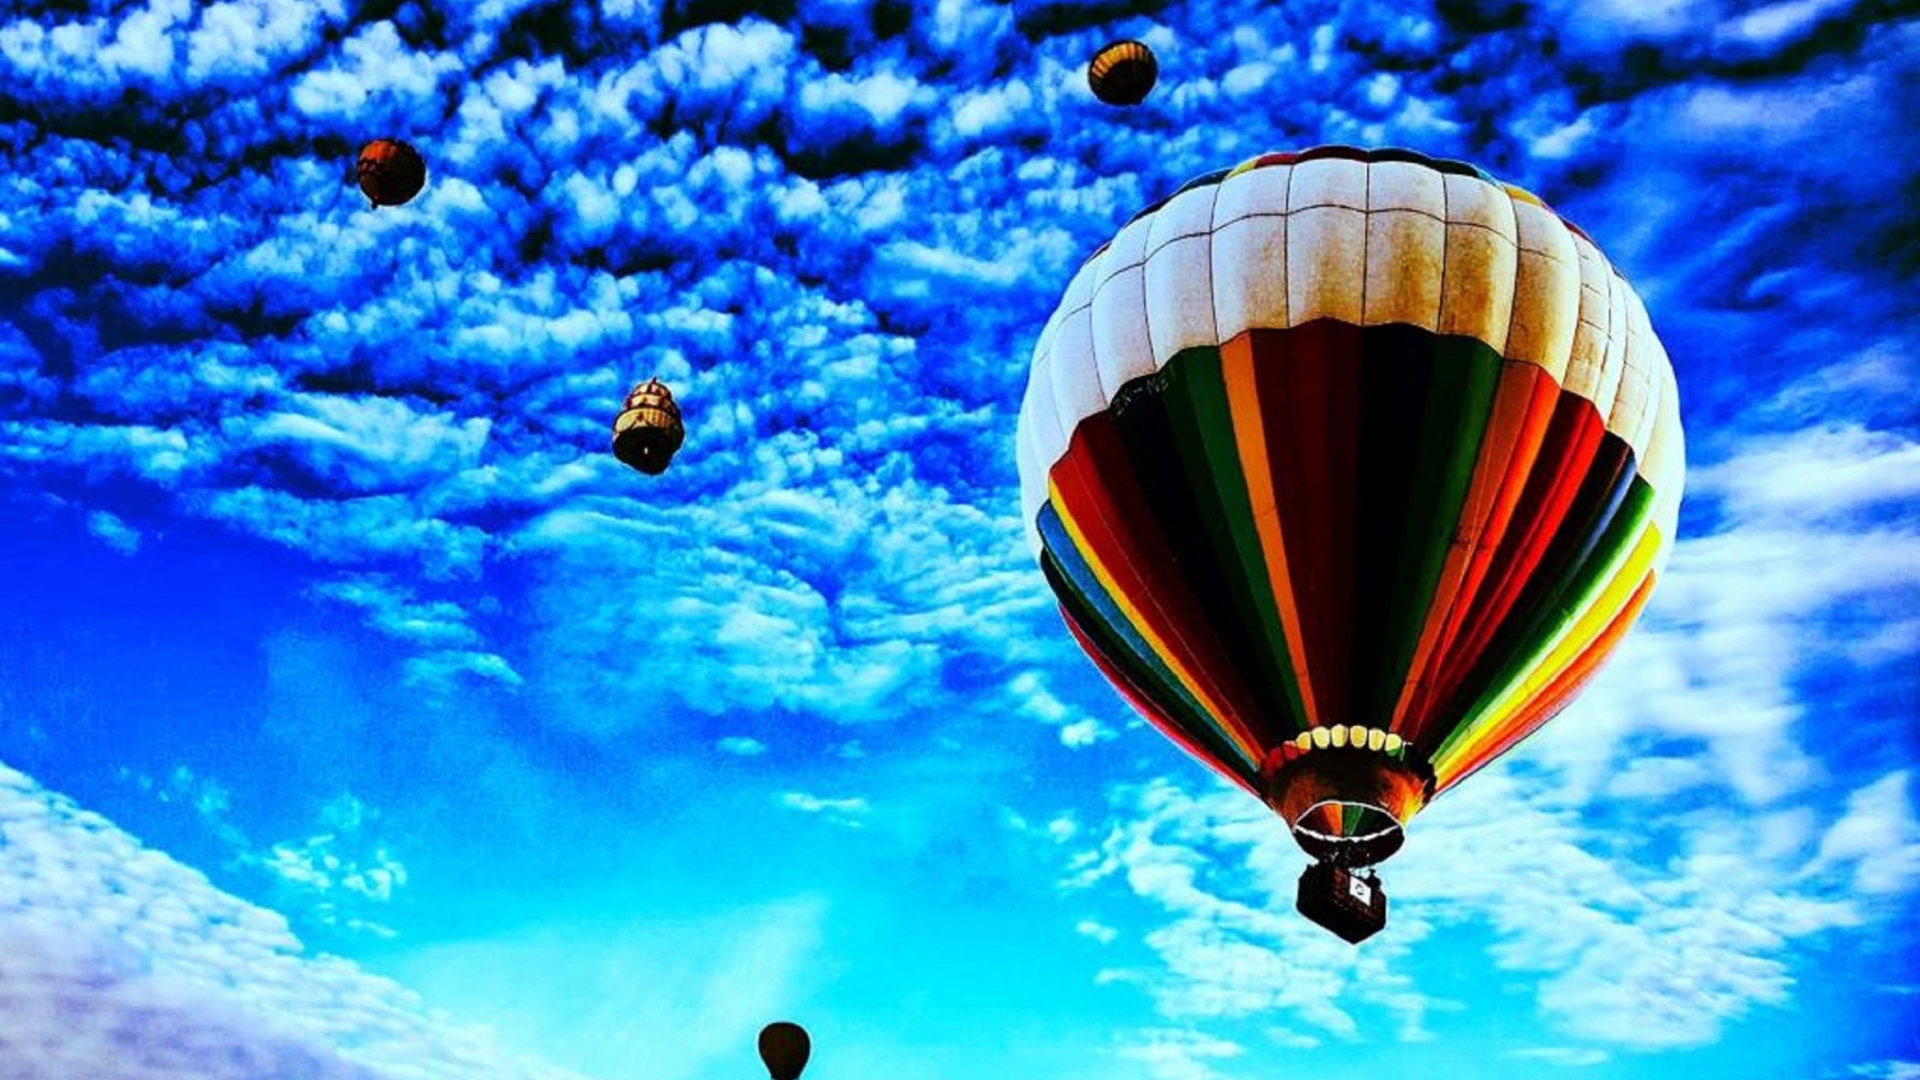 Das Balloons In Sky Wallpaper 1920x1080